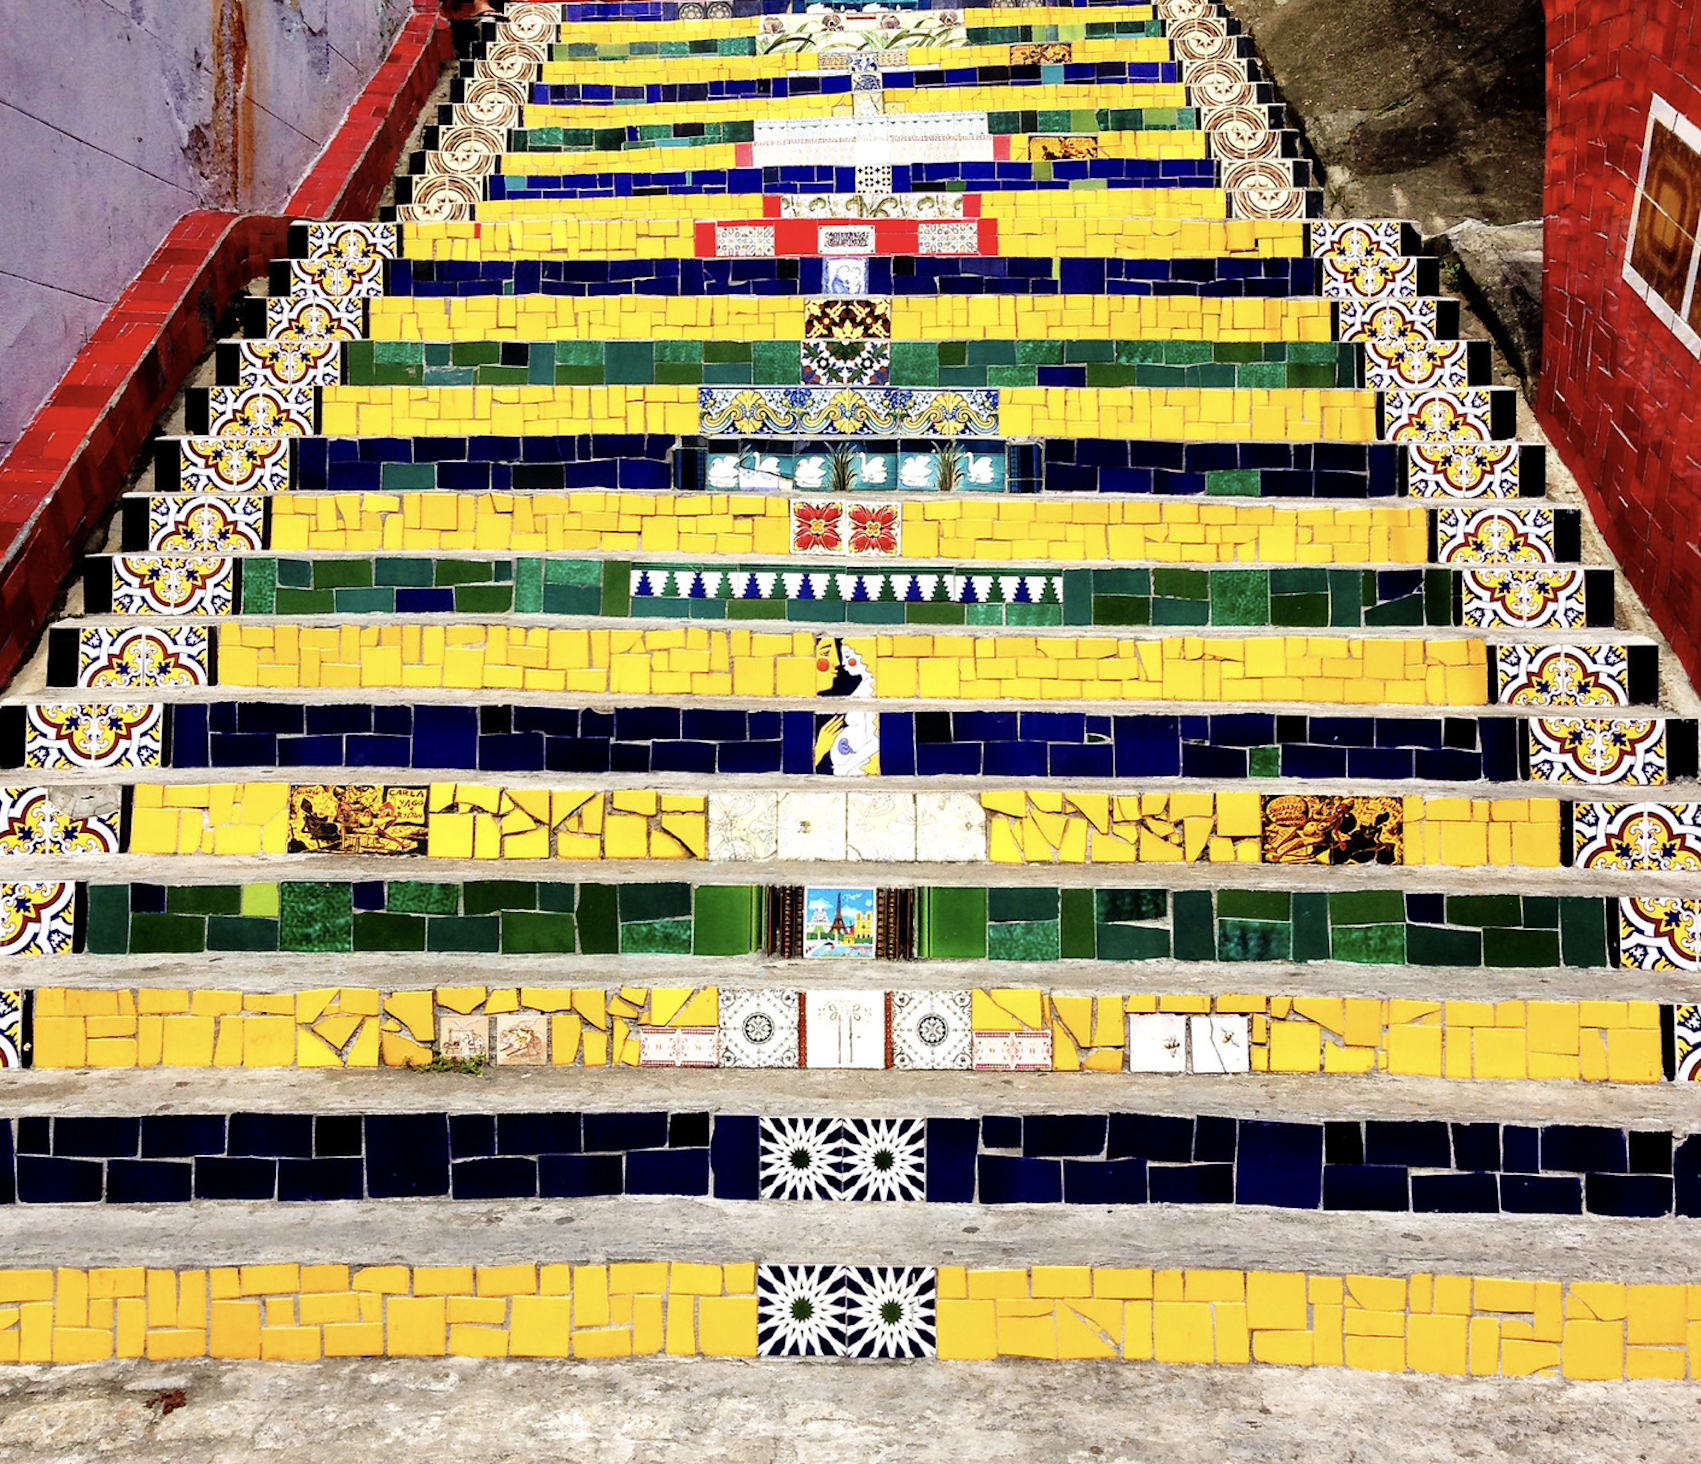 Selaron steps_Rio de Janeiro